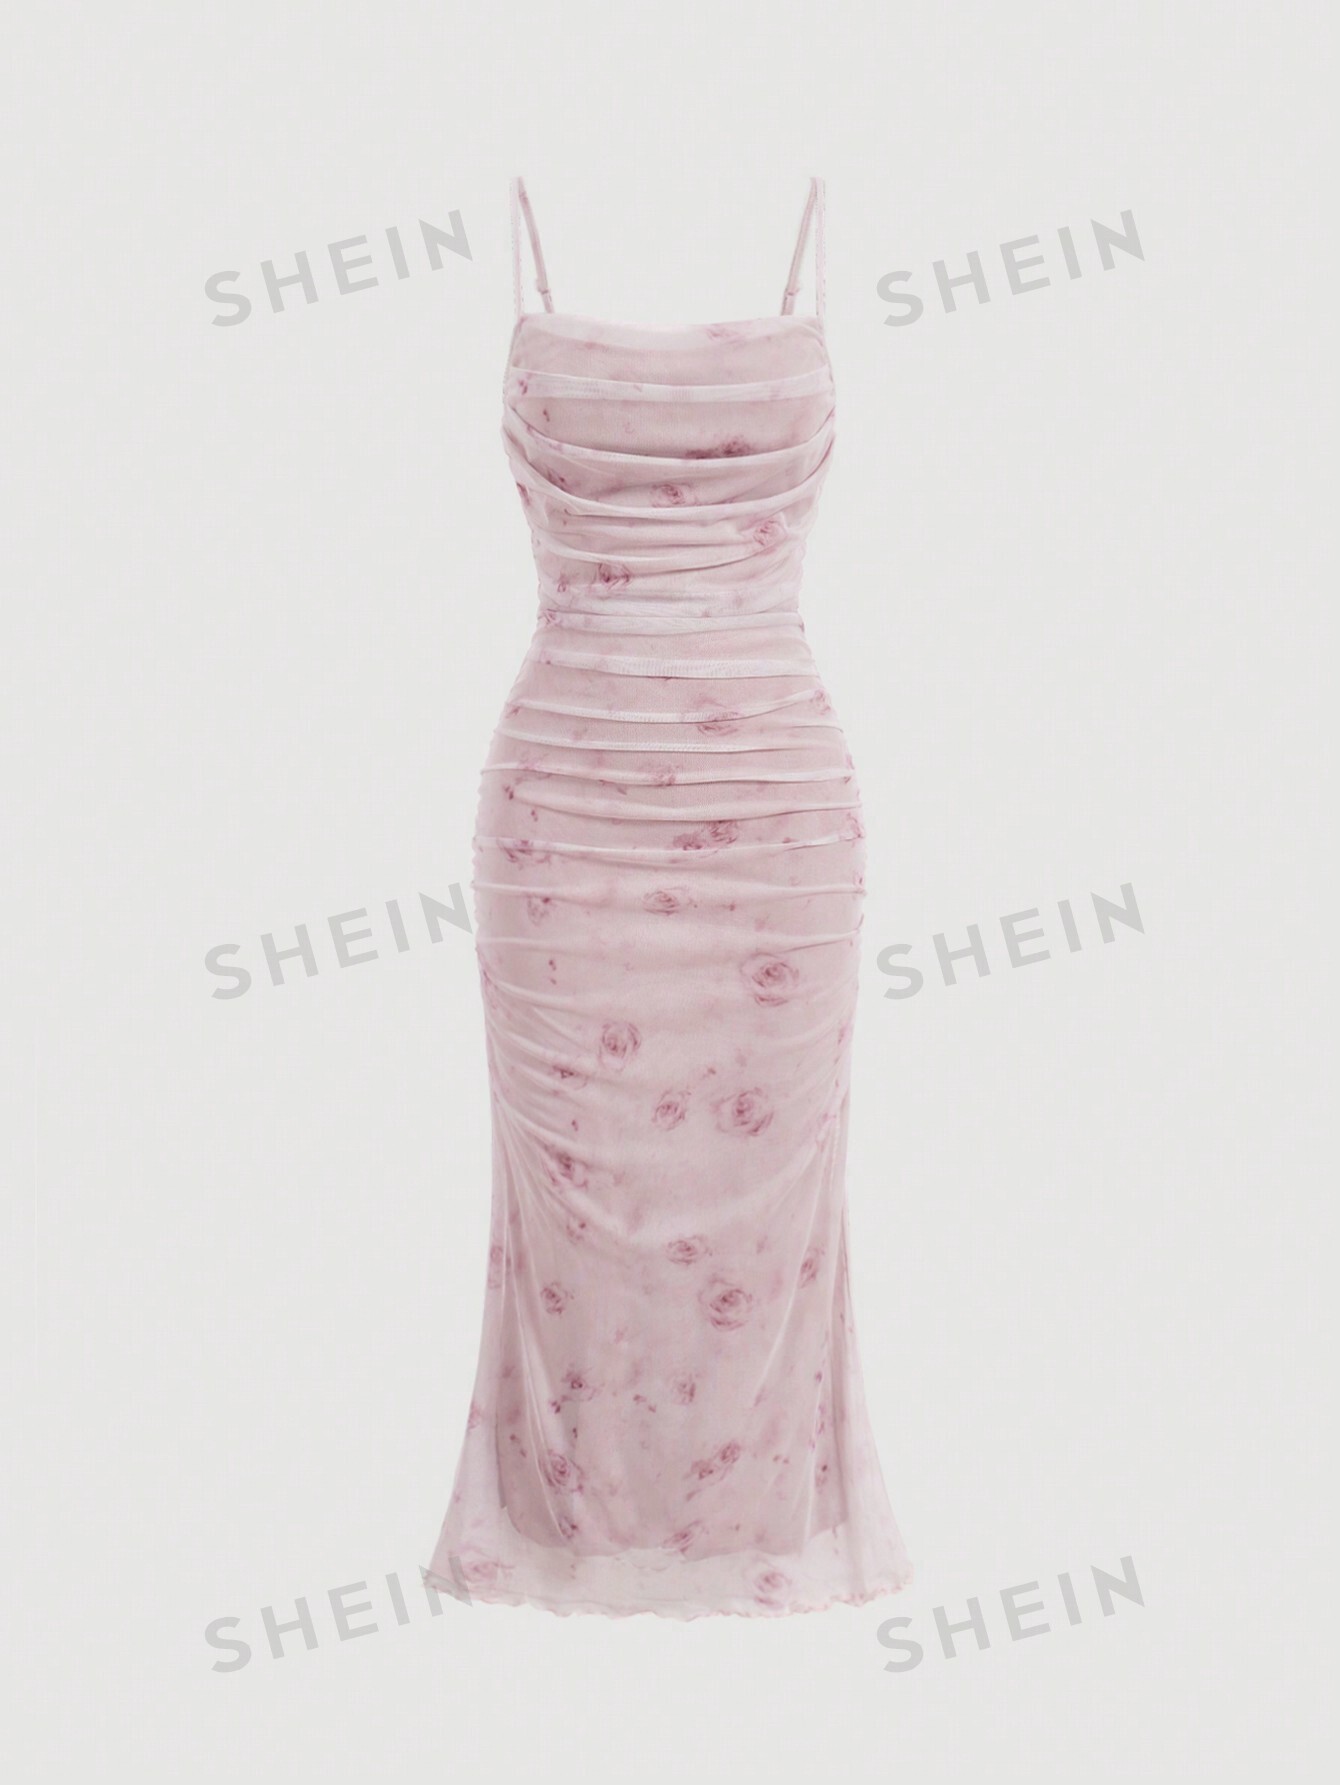 SHEIN MOD Плиссированное платье-комбинация с цветочным принтом и рюшами по подолу, абрикос платье женское летнее длинное на тонких бретельках в африканском стиле